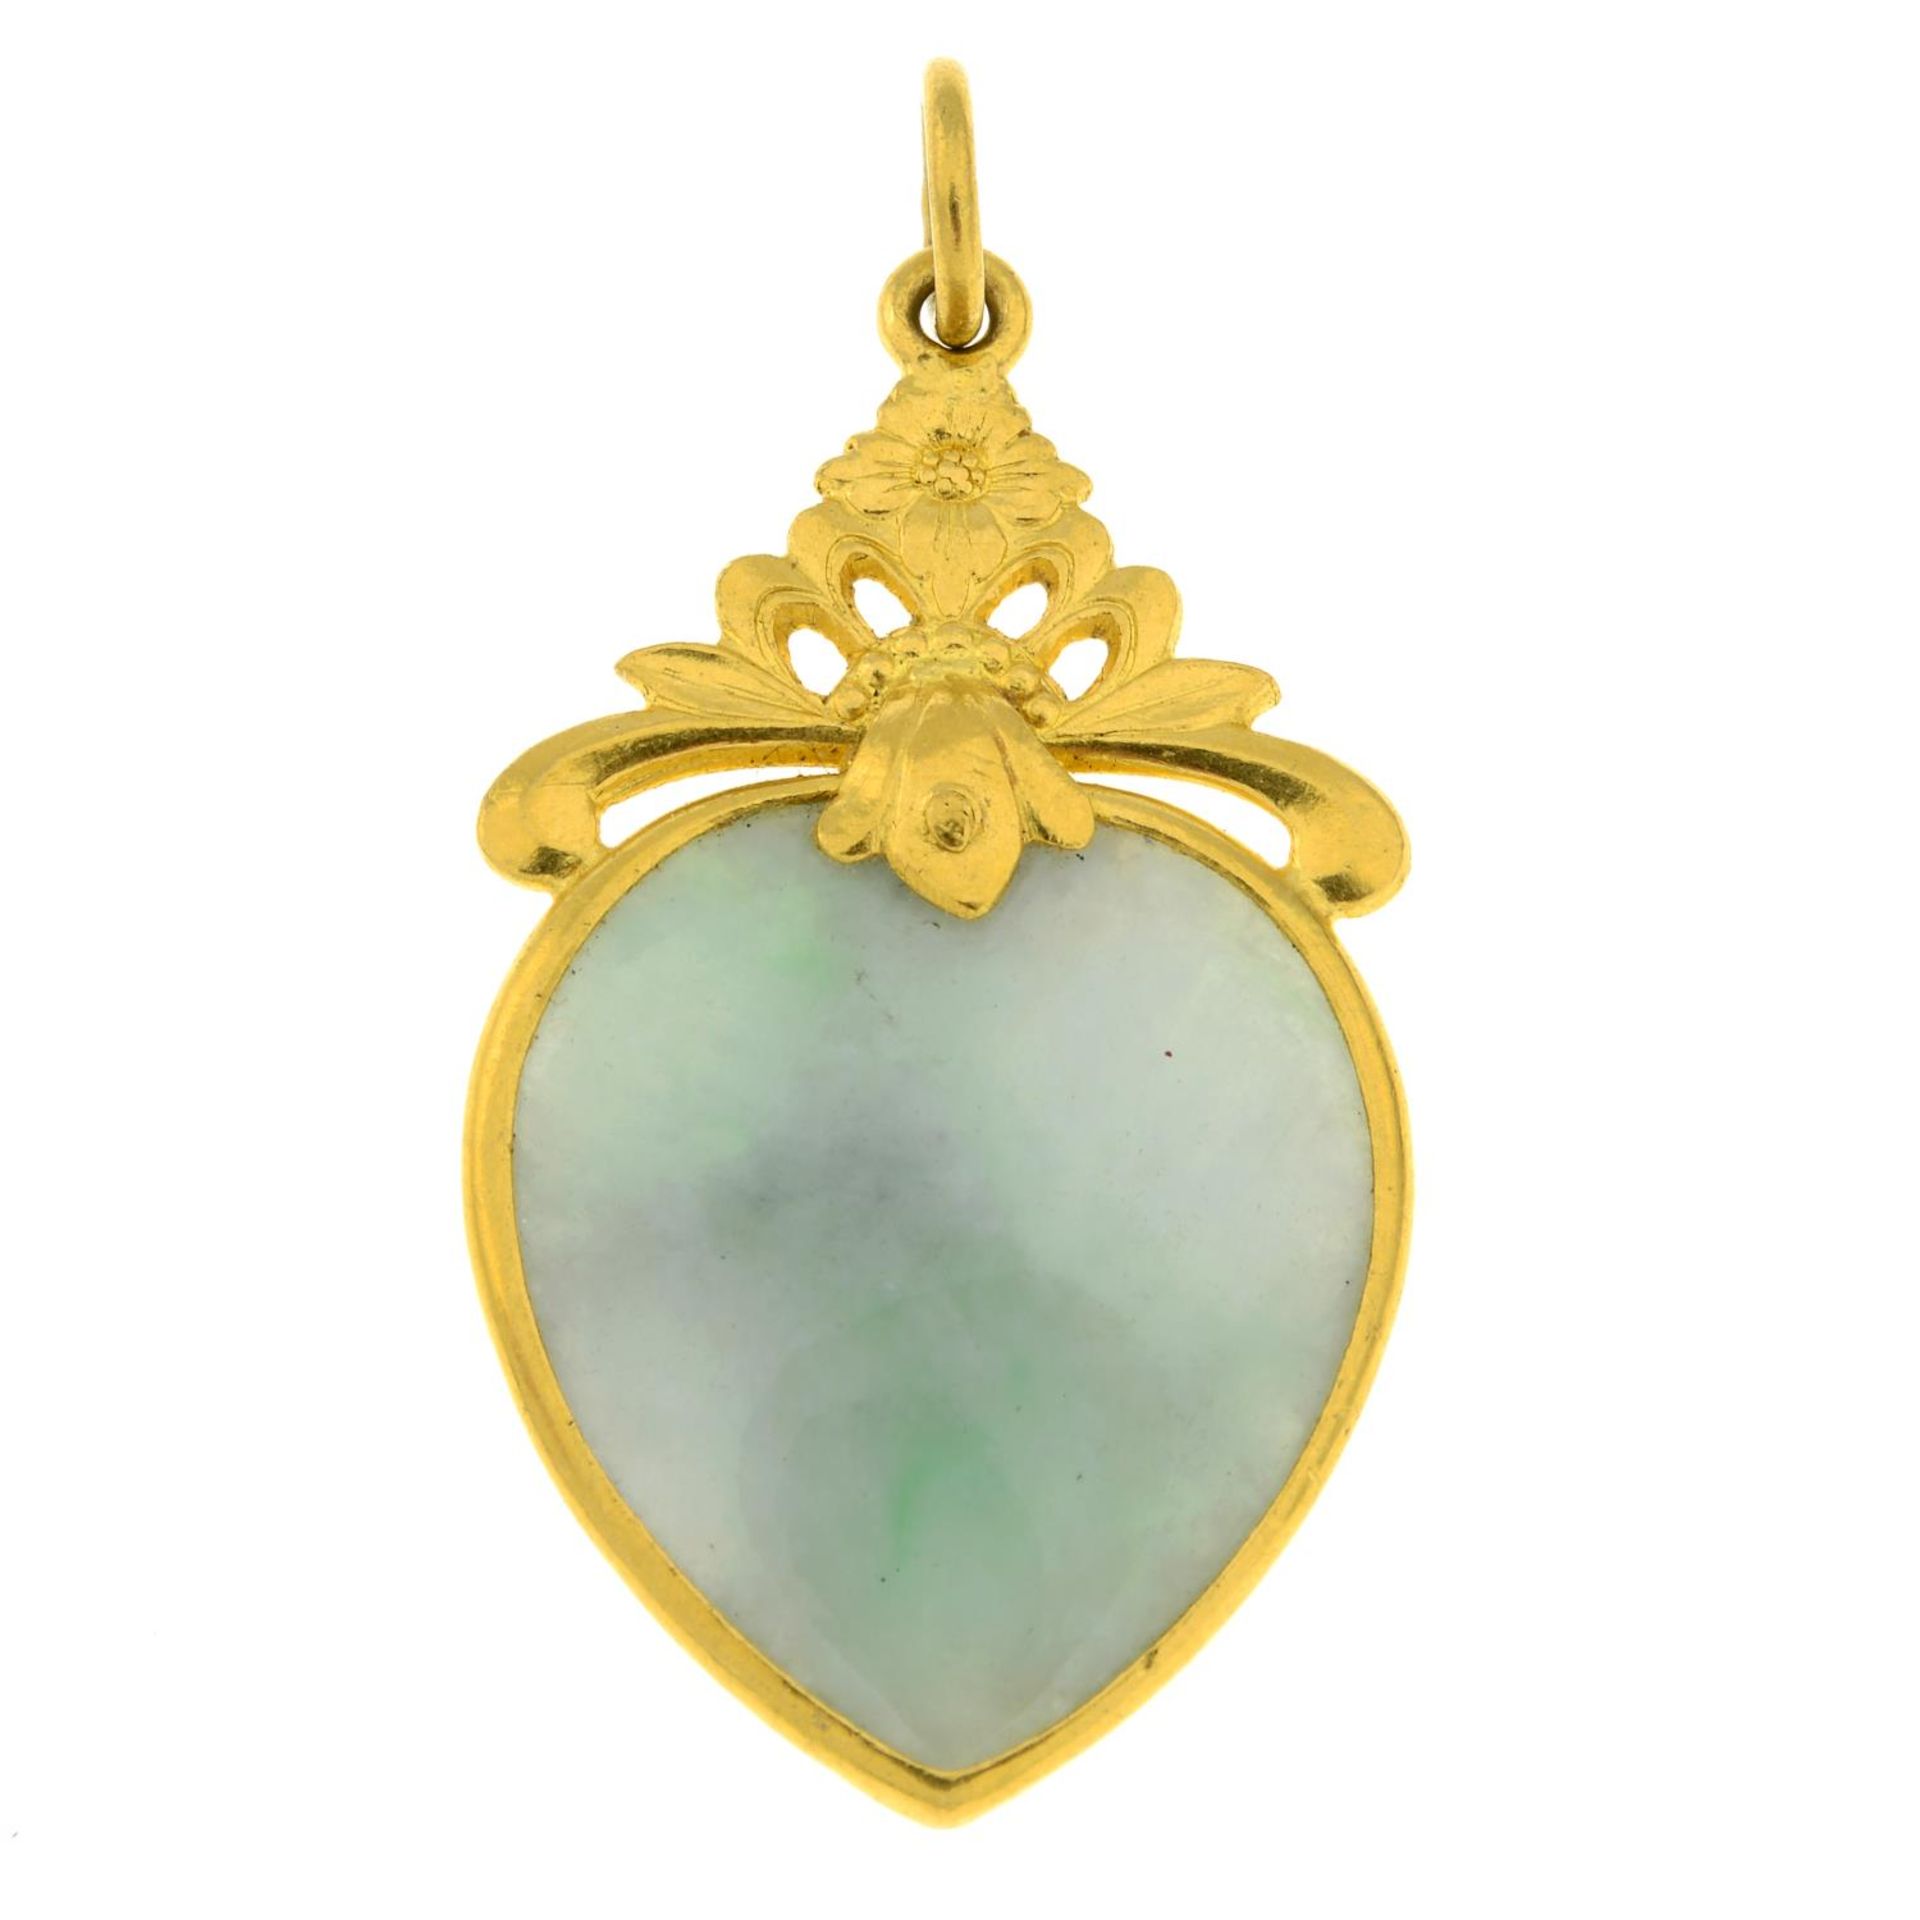 A jadeite heart pendant.Length 4.4cms.